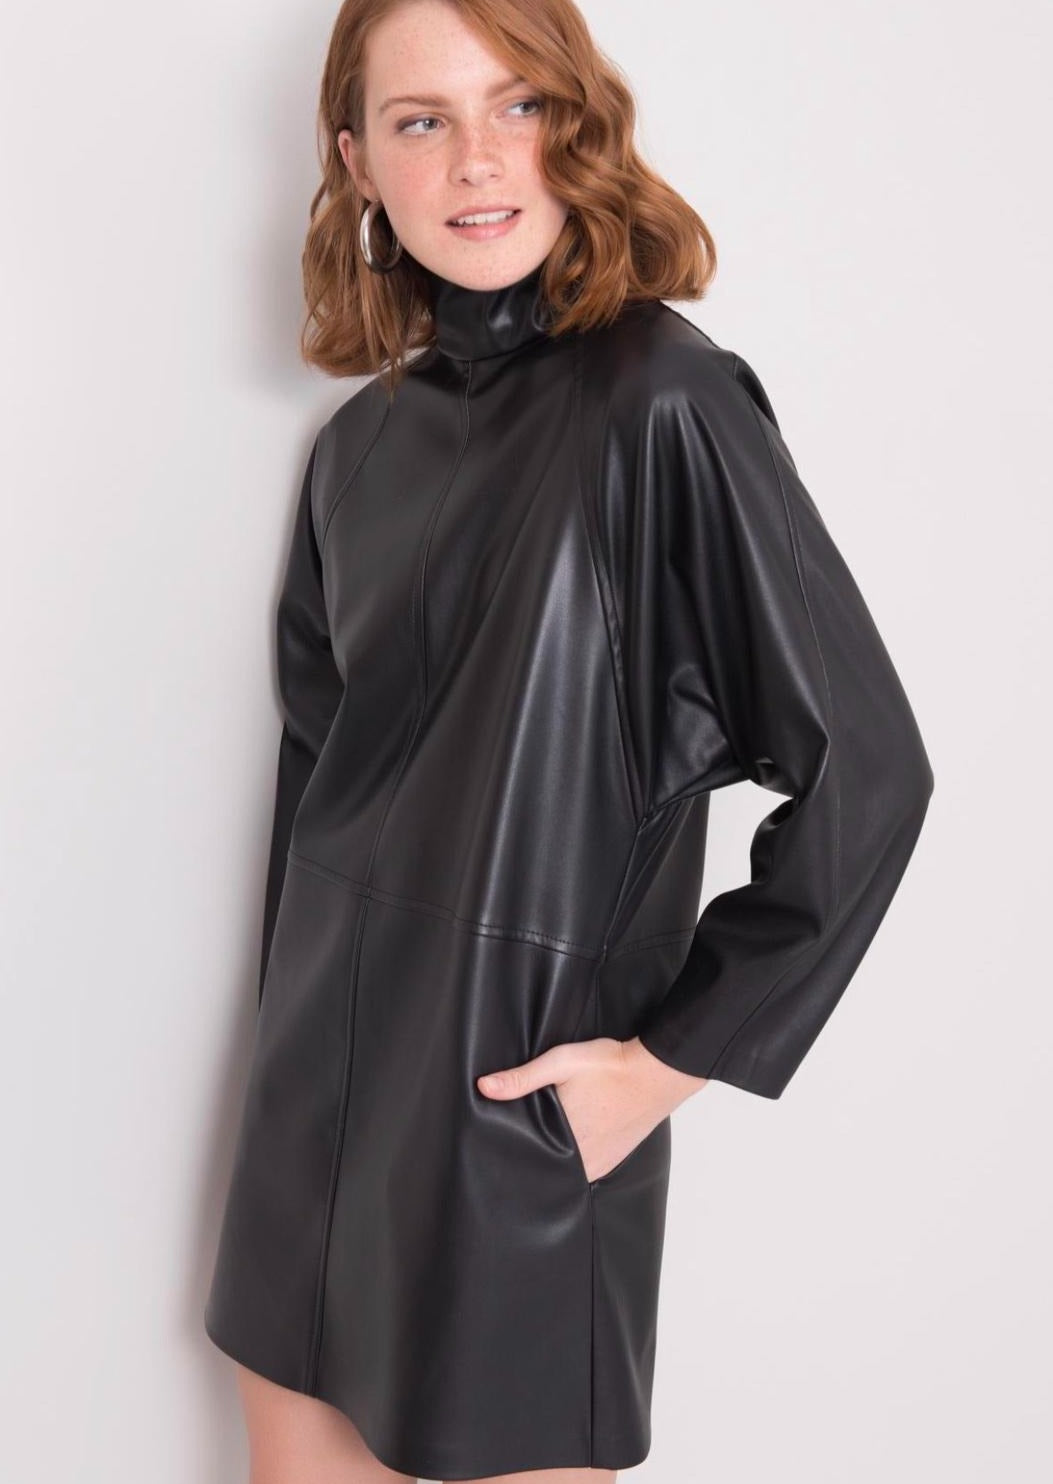 Дамска рокля RALIANA  https://bvseductive.com/products/дамска-рокля-raliana  еко кожа модерна кожена&nbsp; рокля в черен цвят изработена от висококачествена еко кожа&nbsp; чудесен избор за Вашата визия